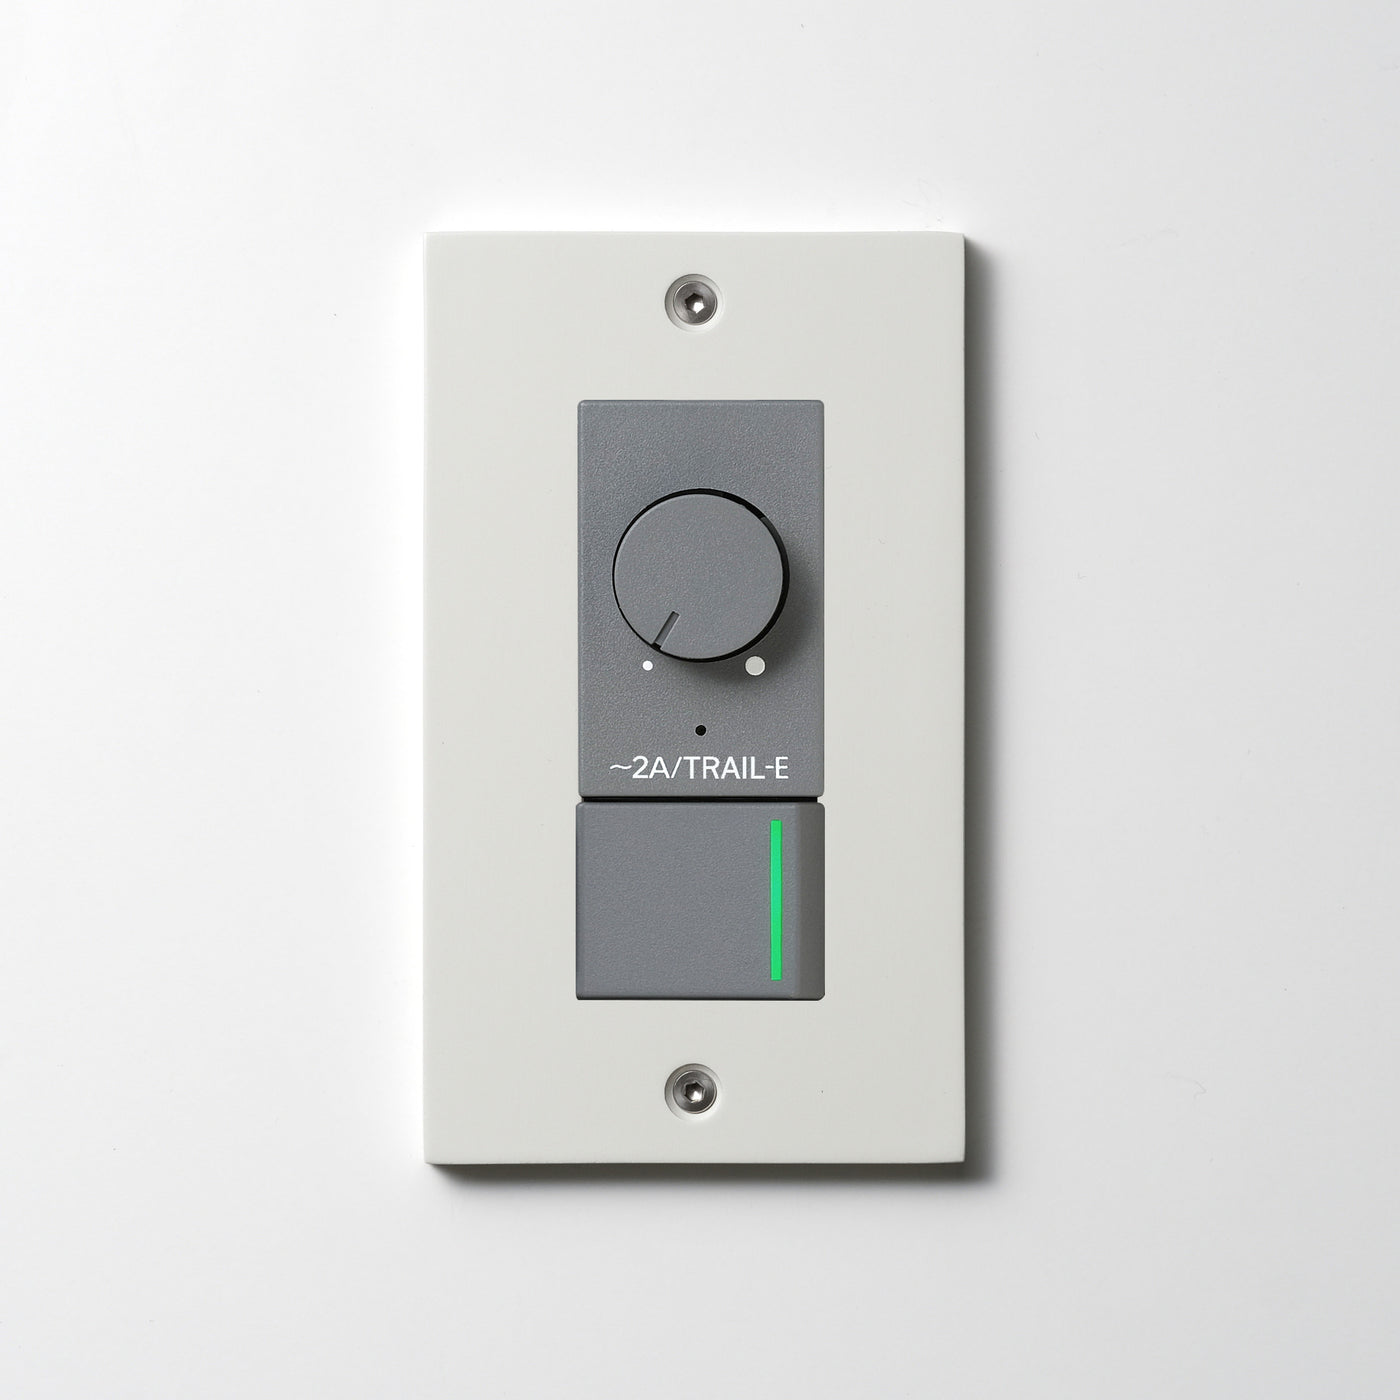 アルミダイキャスト（ホワイト）プレート  <br>+ NK 逆位相制御方式ライトコントロール＋片切、3路ガイドランプ（グリーン）スイッチ　 グレー